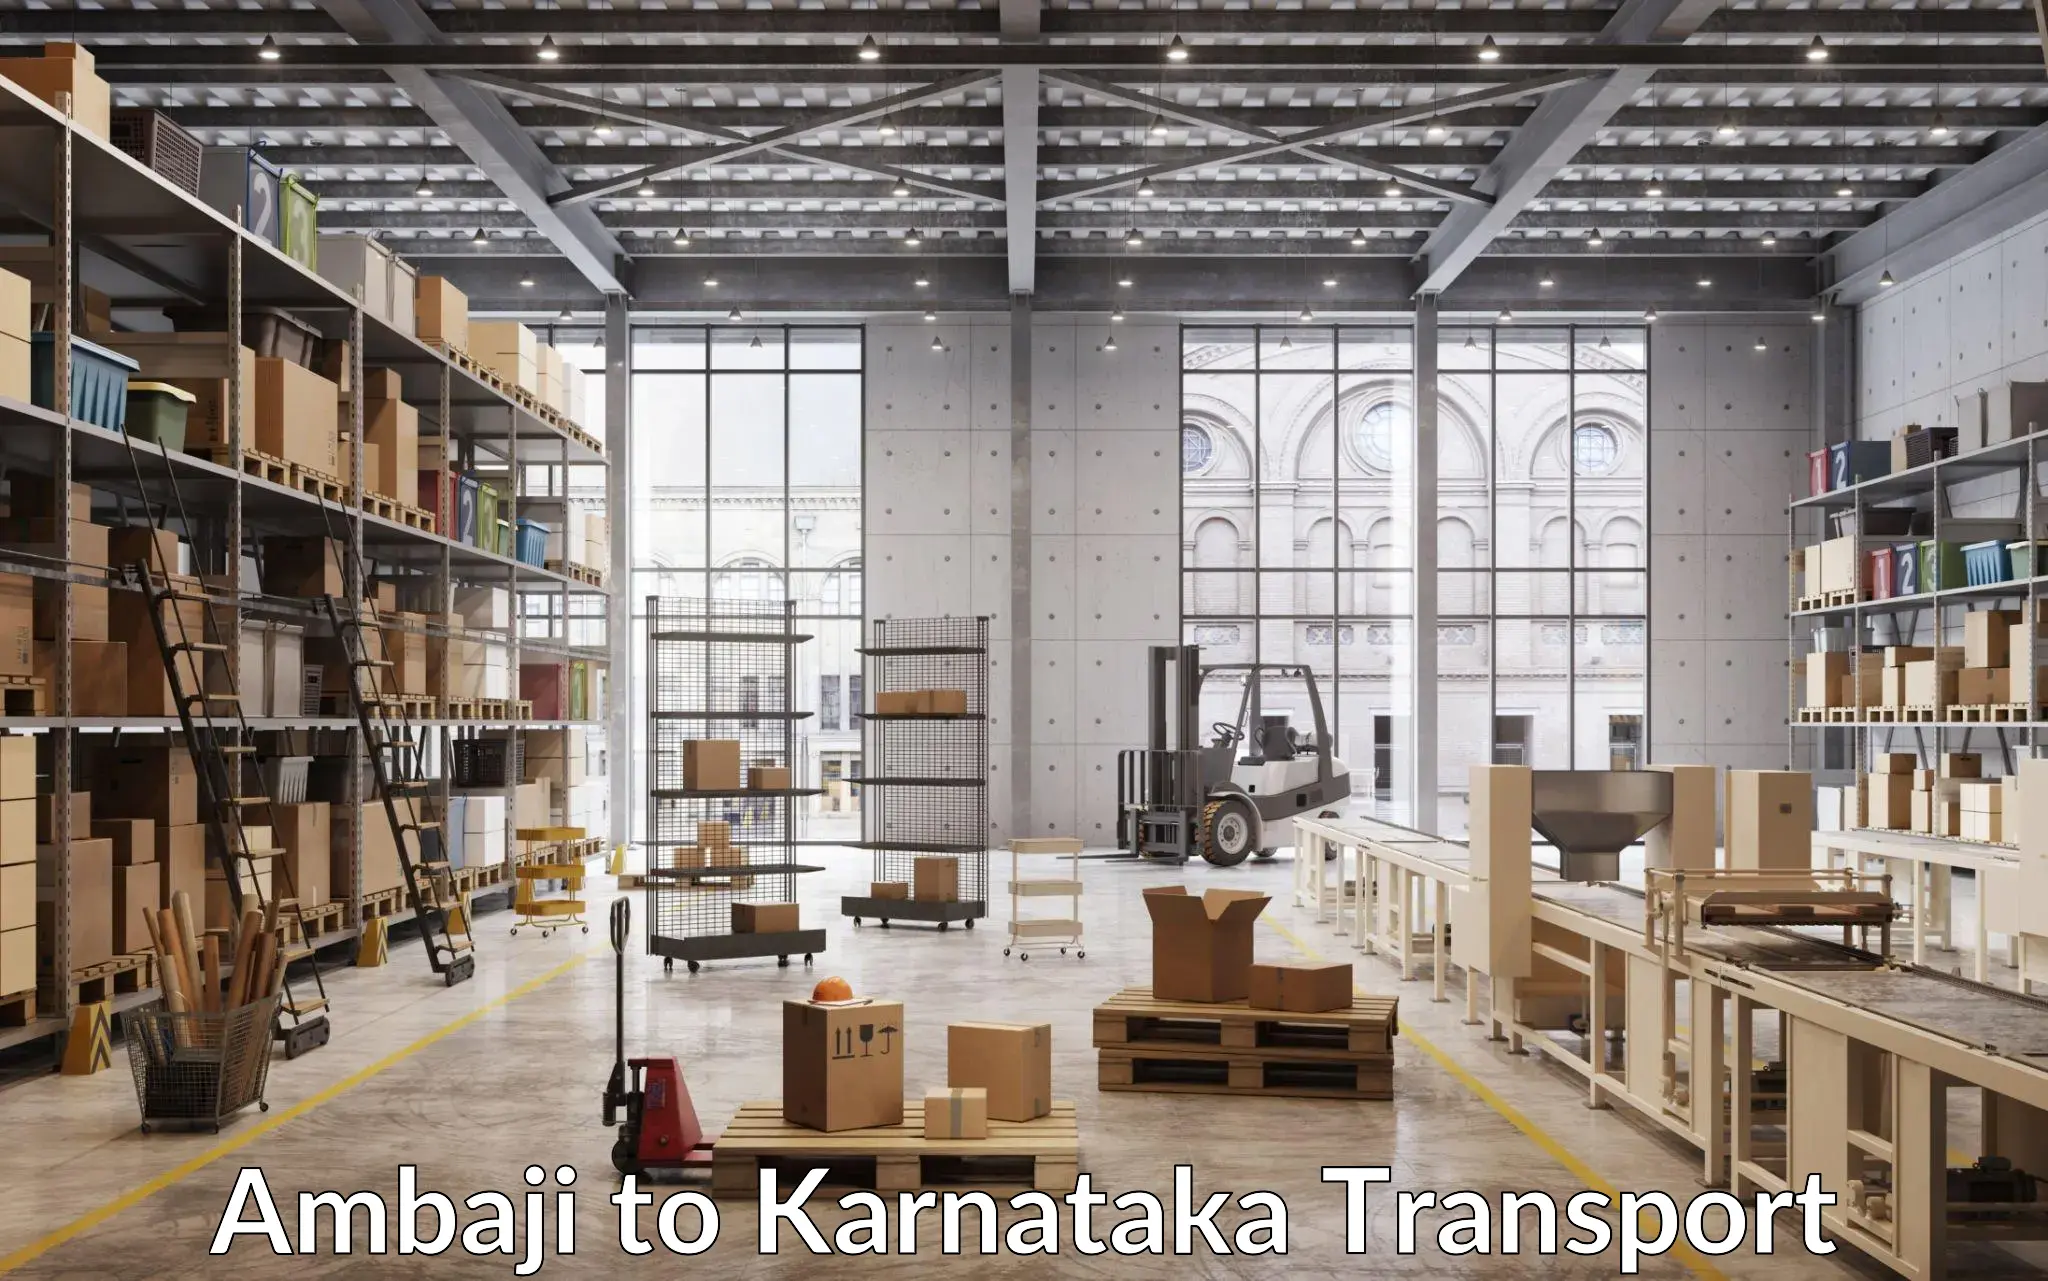 Container transport service Ambaji to Chikkanayakanahalli